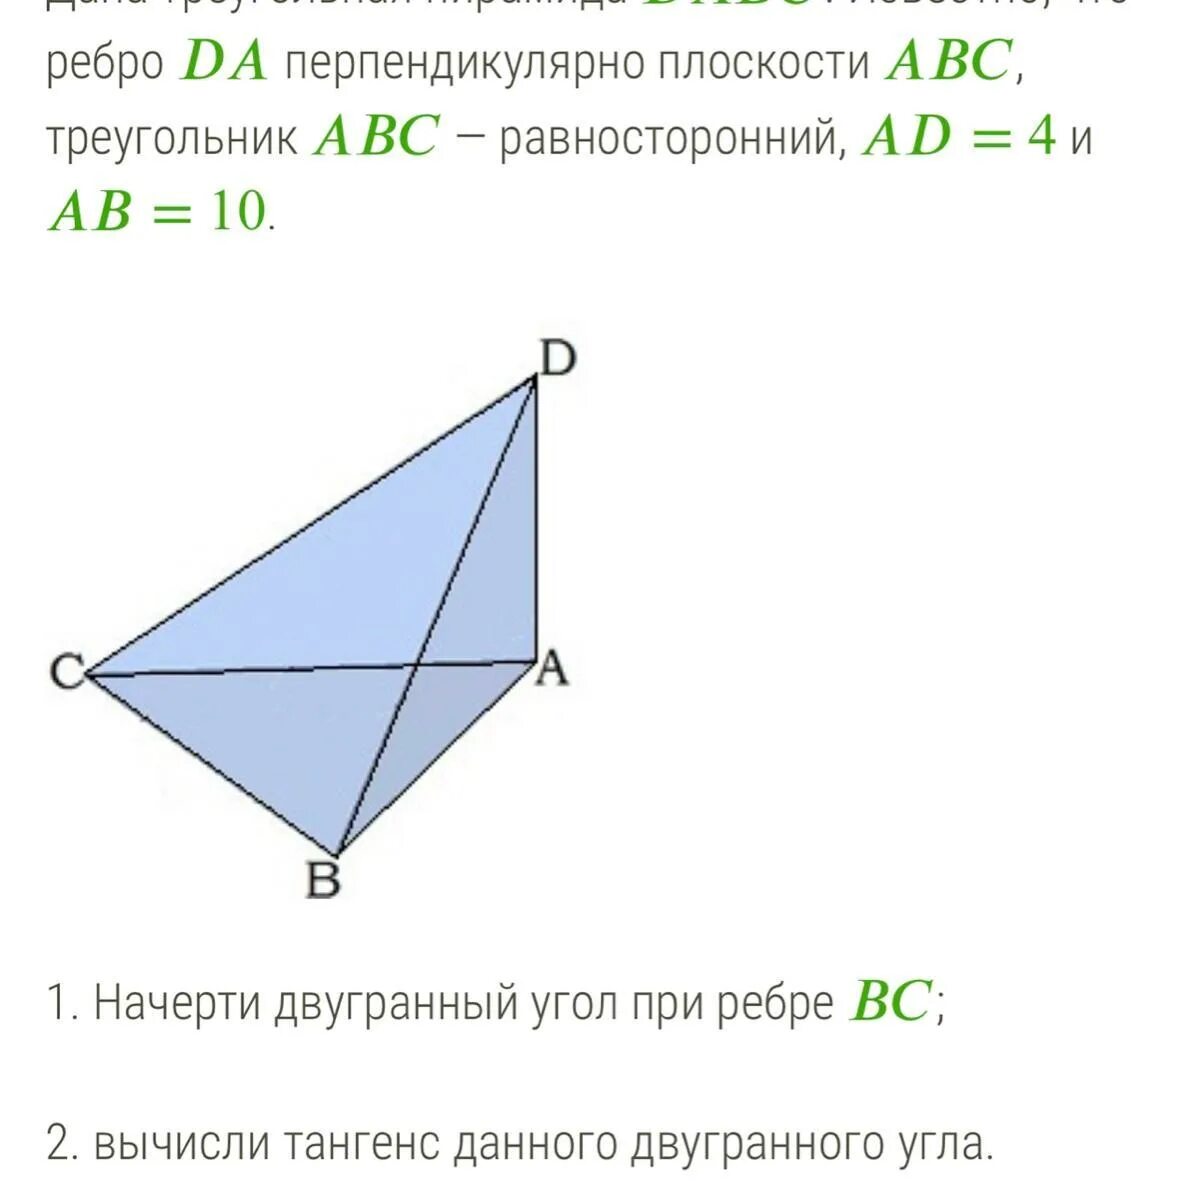 Прямая вк перпендикулярна плоскости равностороннего треугольника. Ребро перпендикулярно плоскости. Пирамида треугольная ребро перпендикулярно. Треугольная пирамида с перпендикулярным ребром. Треугольная пирамида ребро перпендикулярно плоскости.